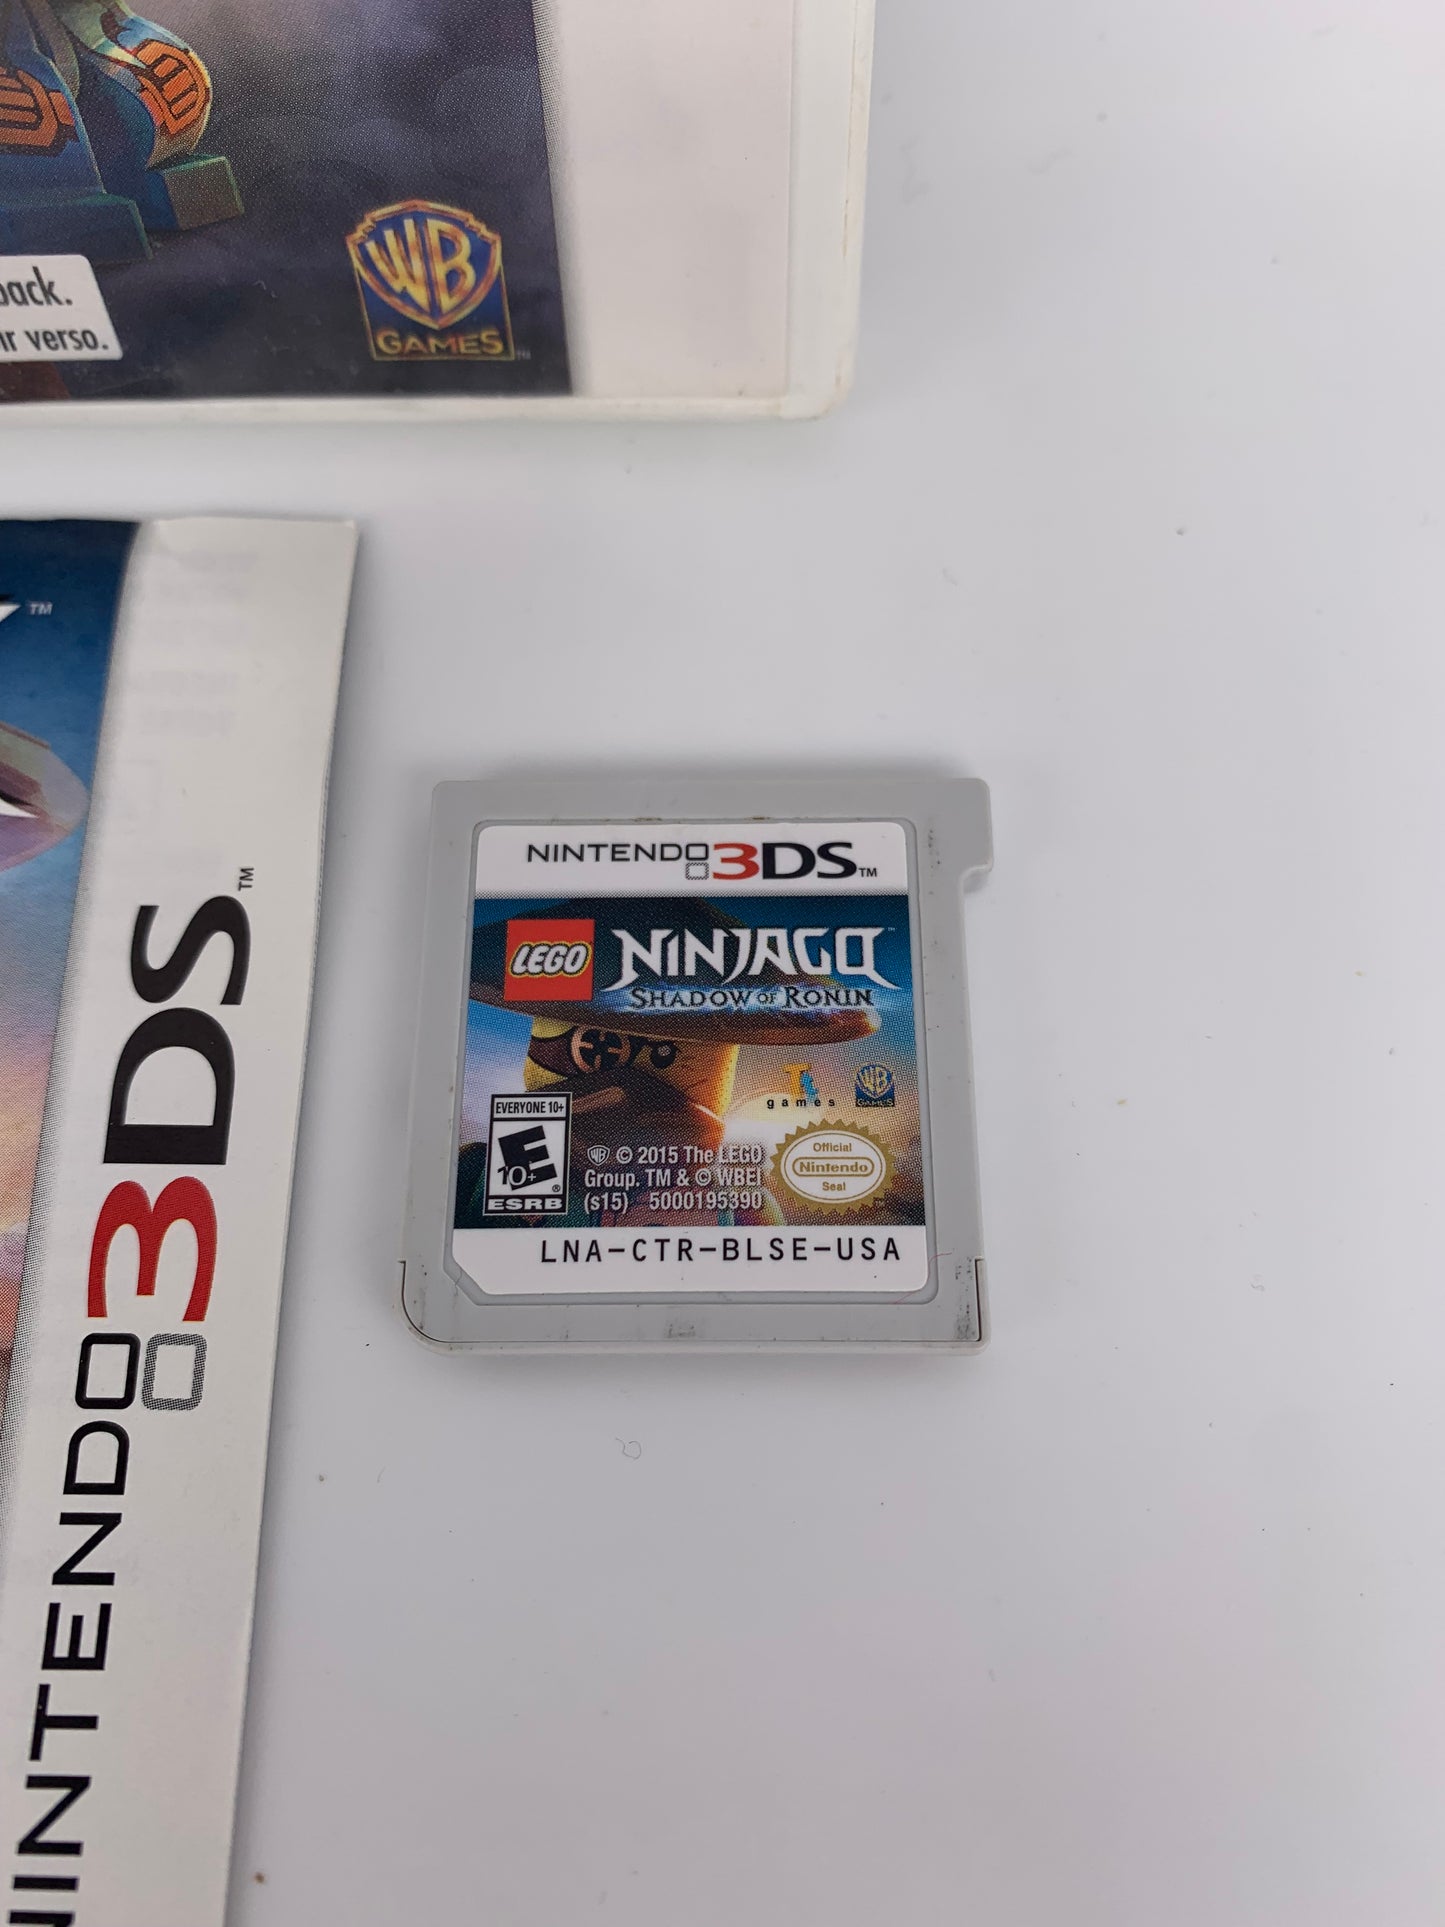 NiNTENDO 3DS | LEGO NiNJAGO SHADOW OF RONiN